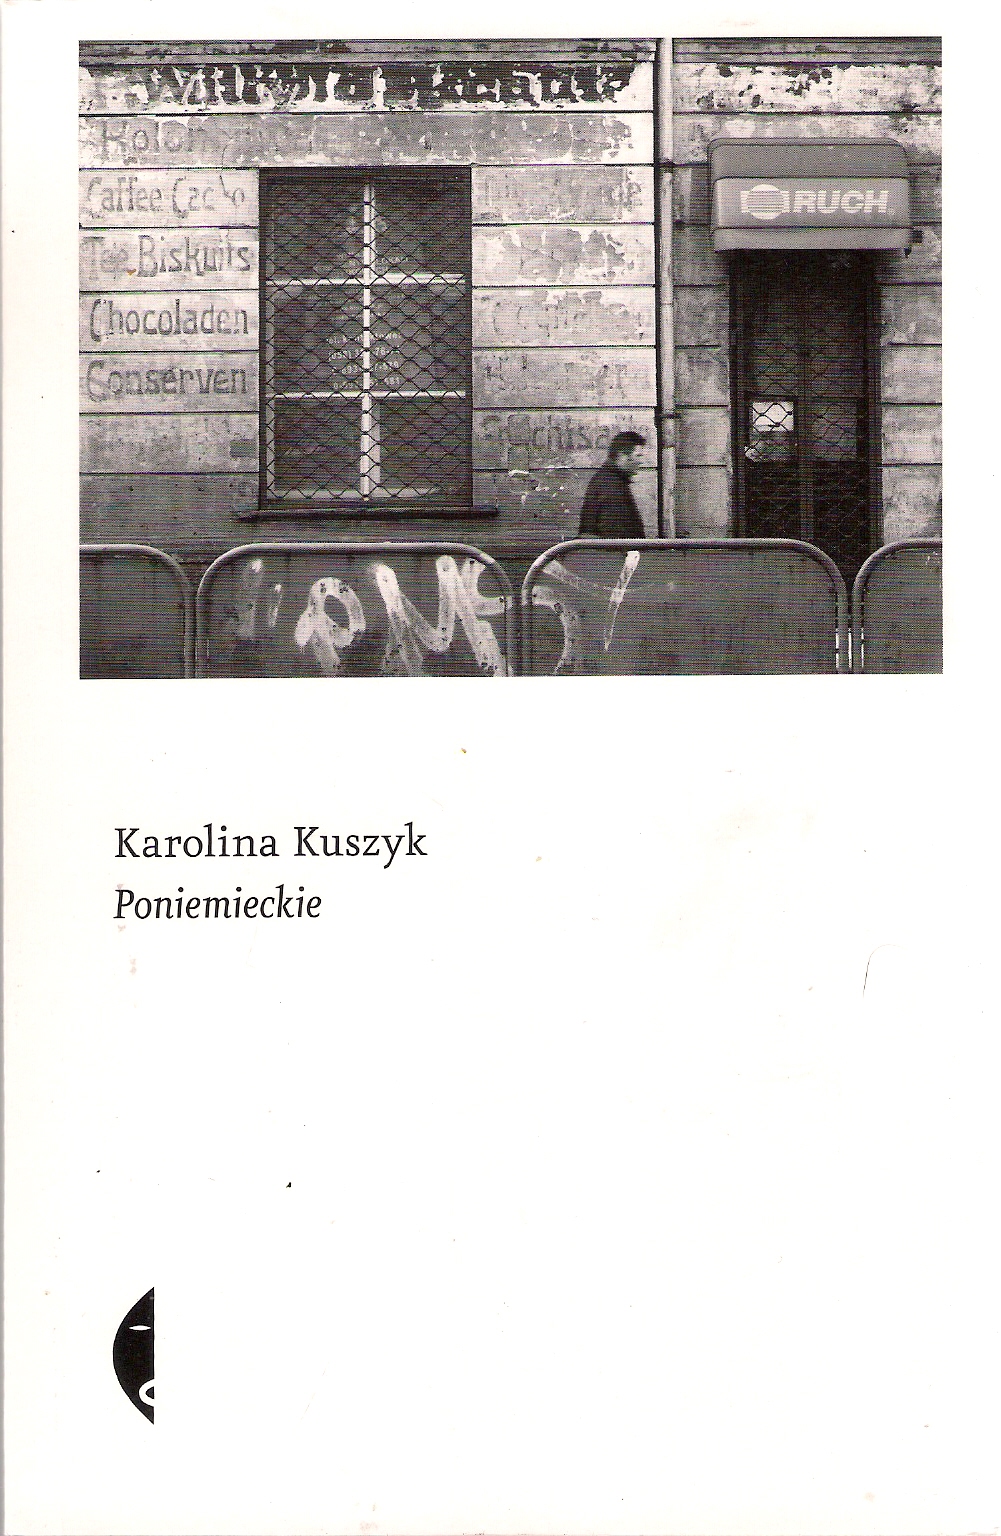 Karolina Kuszyk, „Poniemieckie”, Wydawnictwo Czarne, Wołowiec 2019, 460 s. Biblioteka posiada jeden egzemplarz do wypożyczenia i jeden do przeczytania na miejscu.